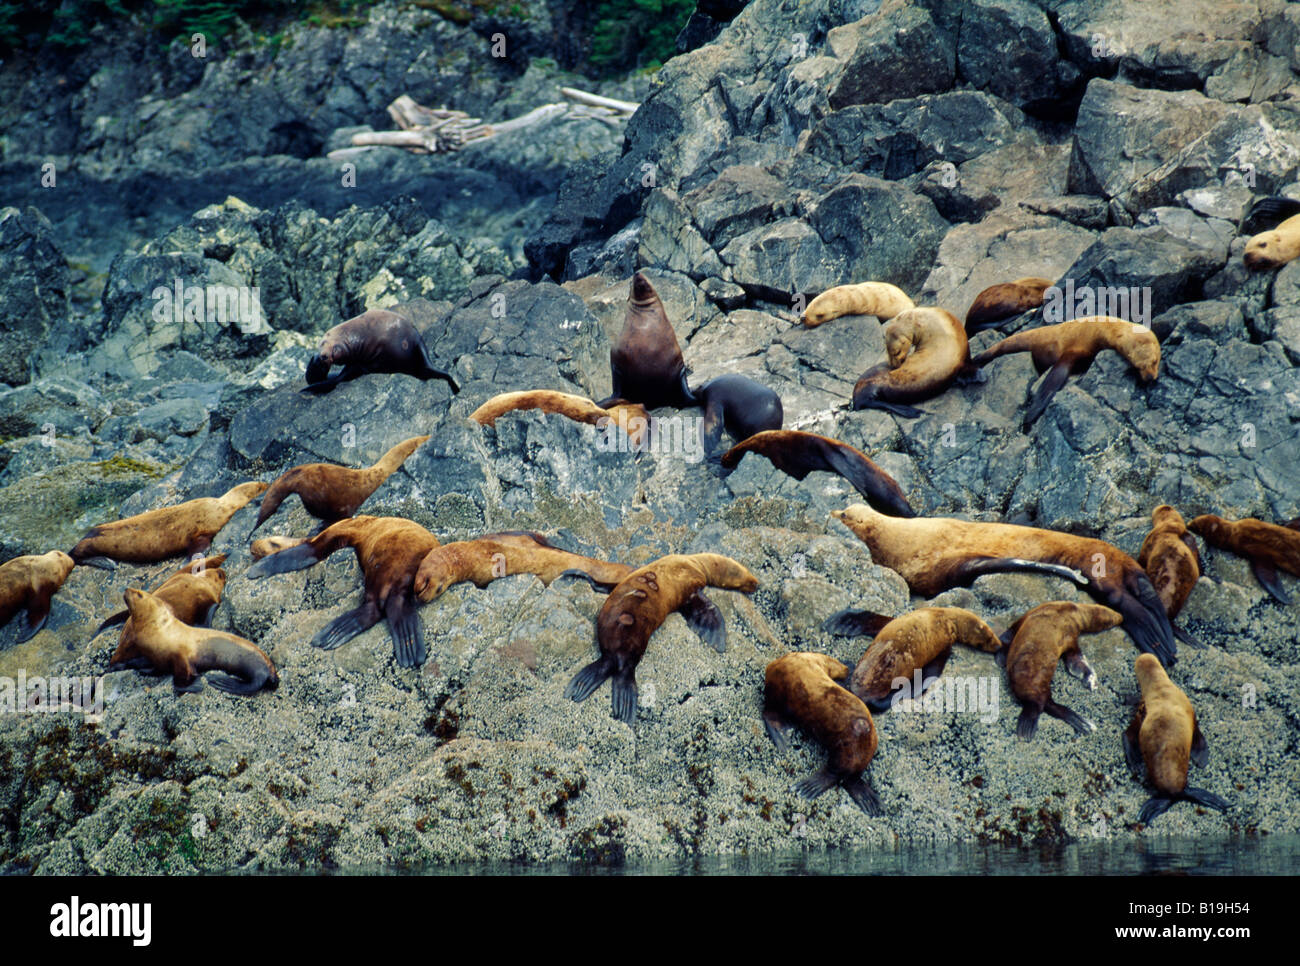 USA, Alaska, île de l'amirauté. Les lions de mer de Steller (Eumetopias jubatus) sur les rochers de l'île de l'amirauté. Banque D'Images